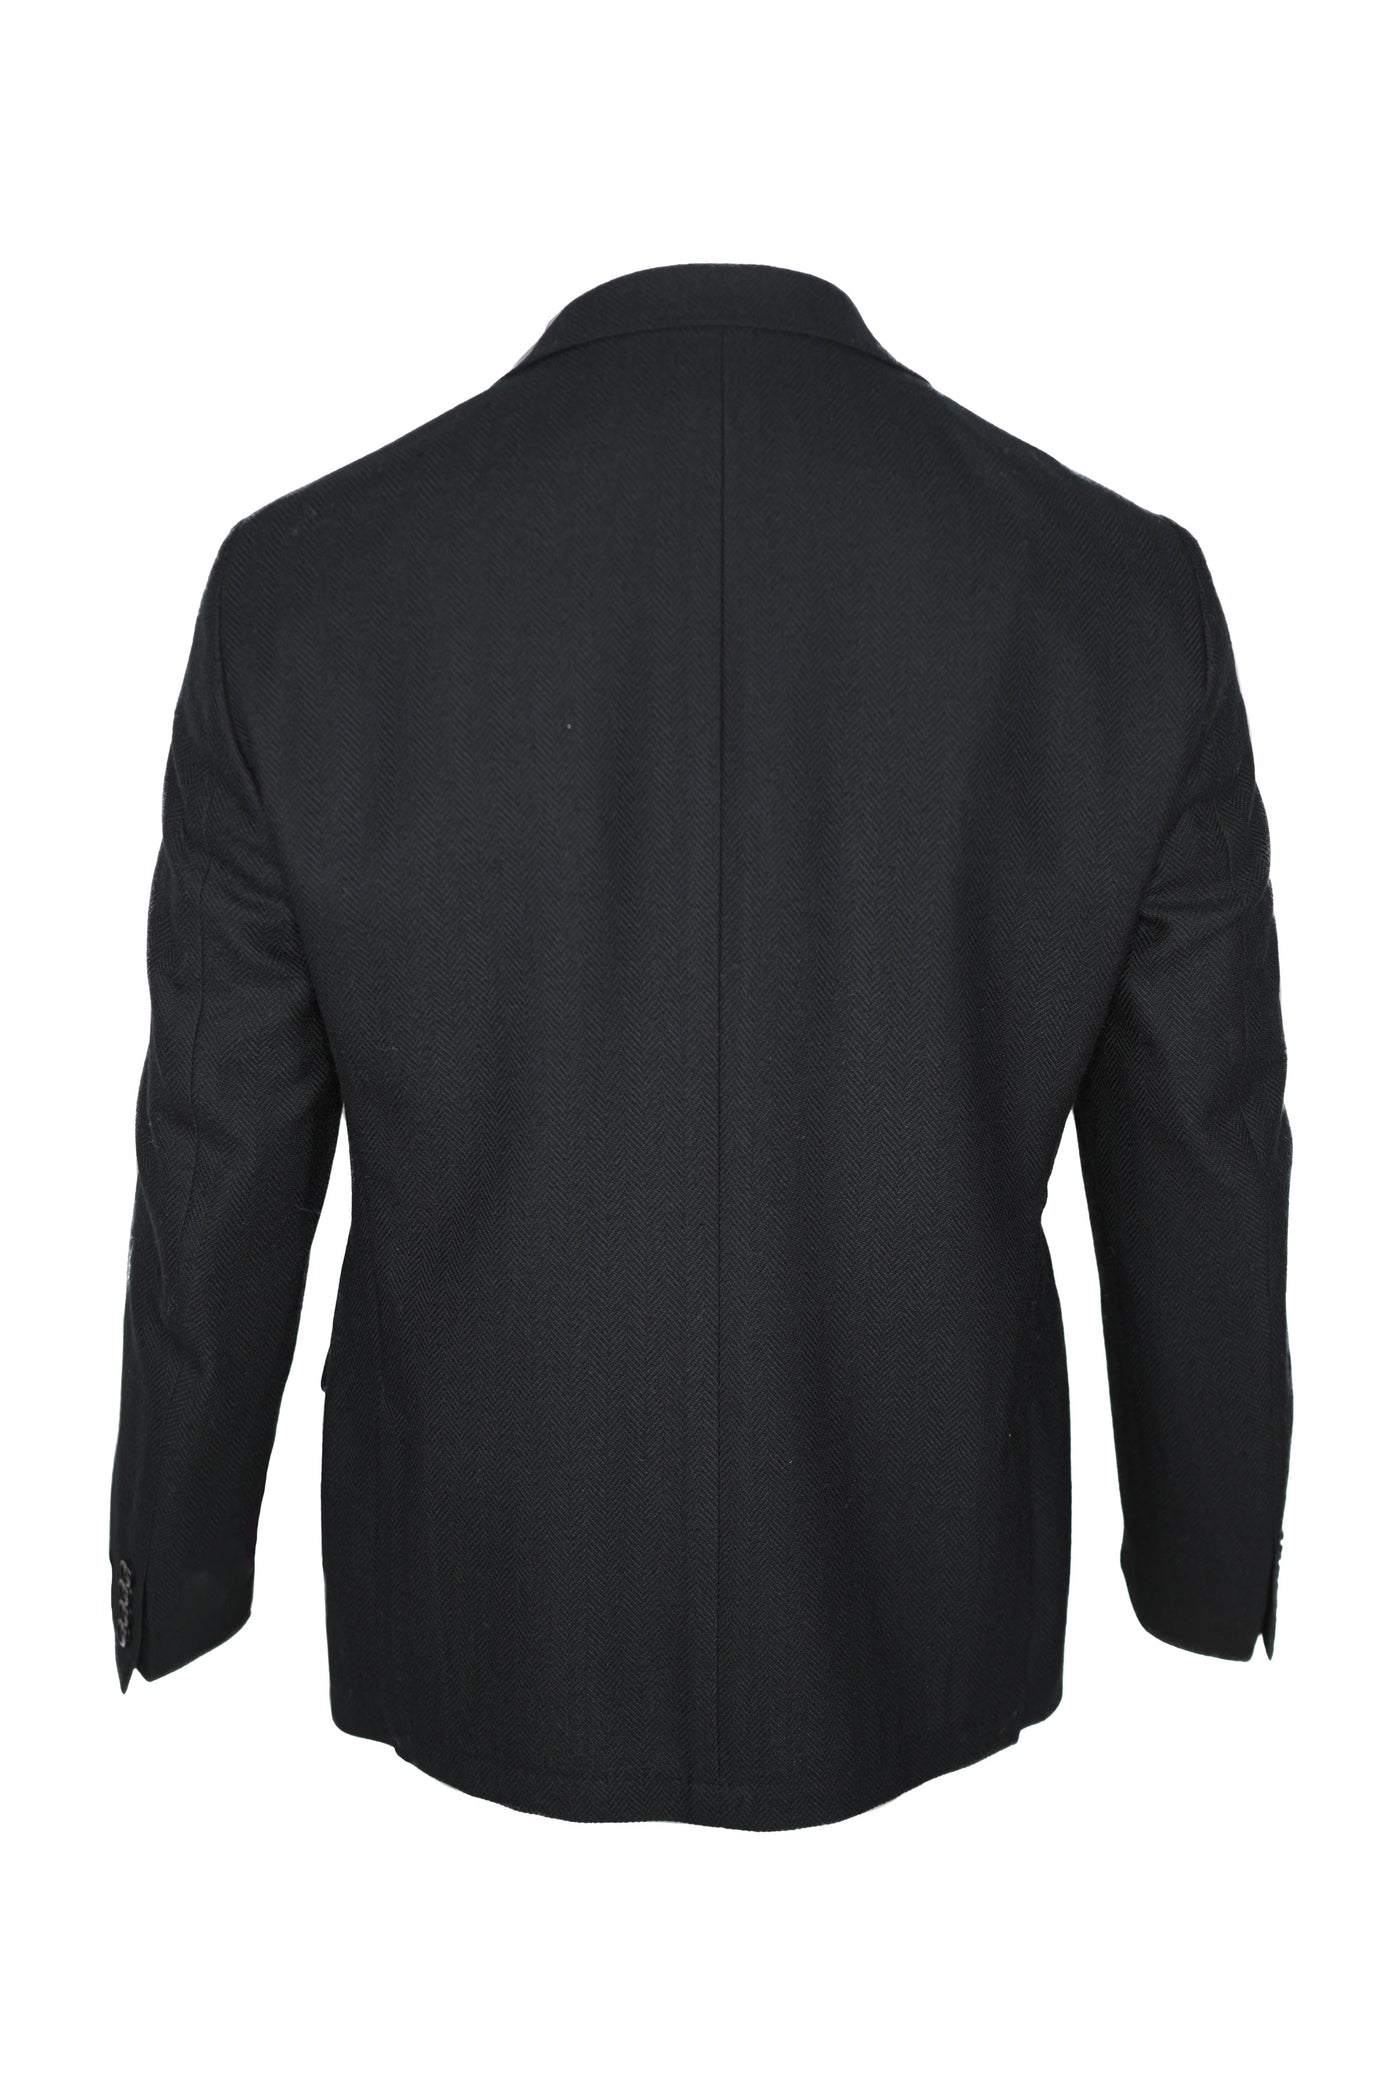 Calvin-klein Sport Coats & Blazers for Men, Sport Coats